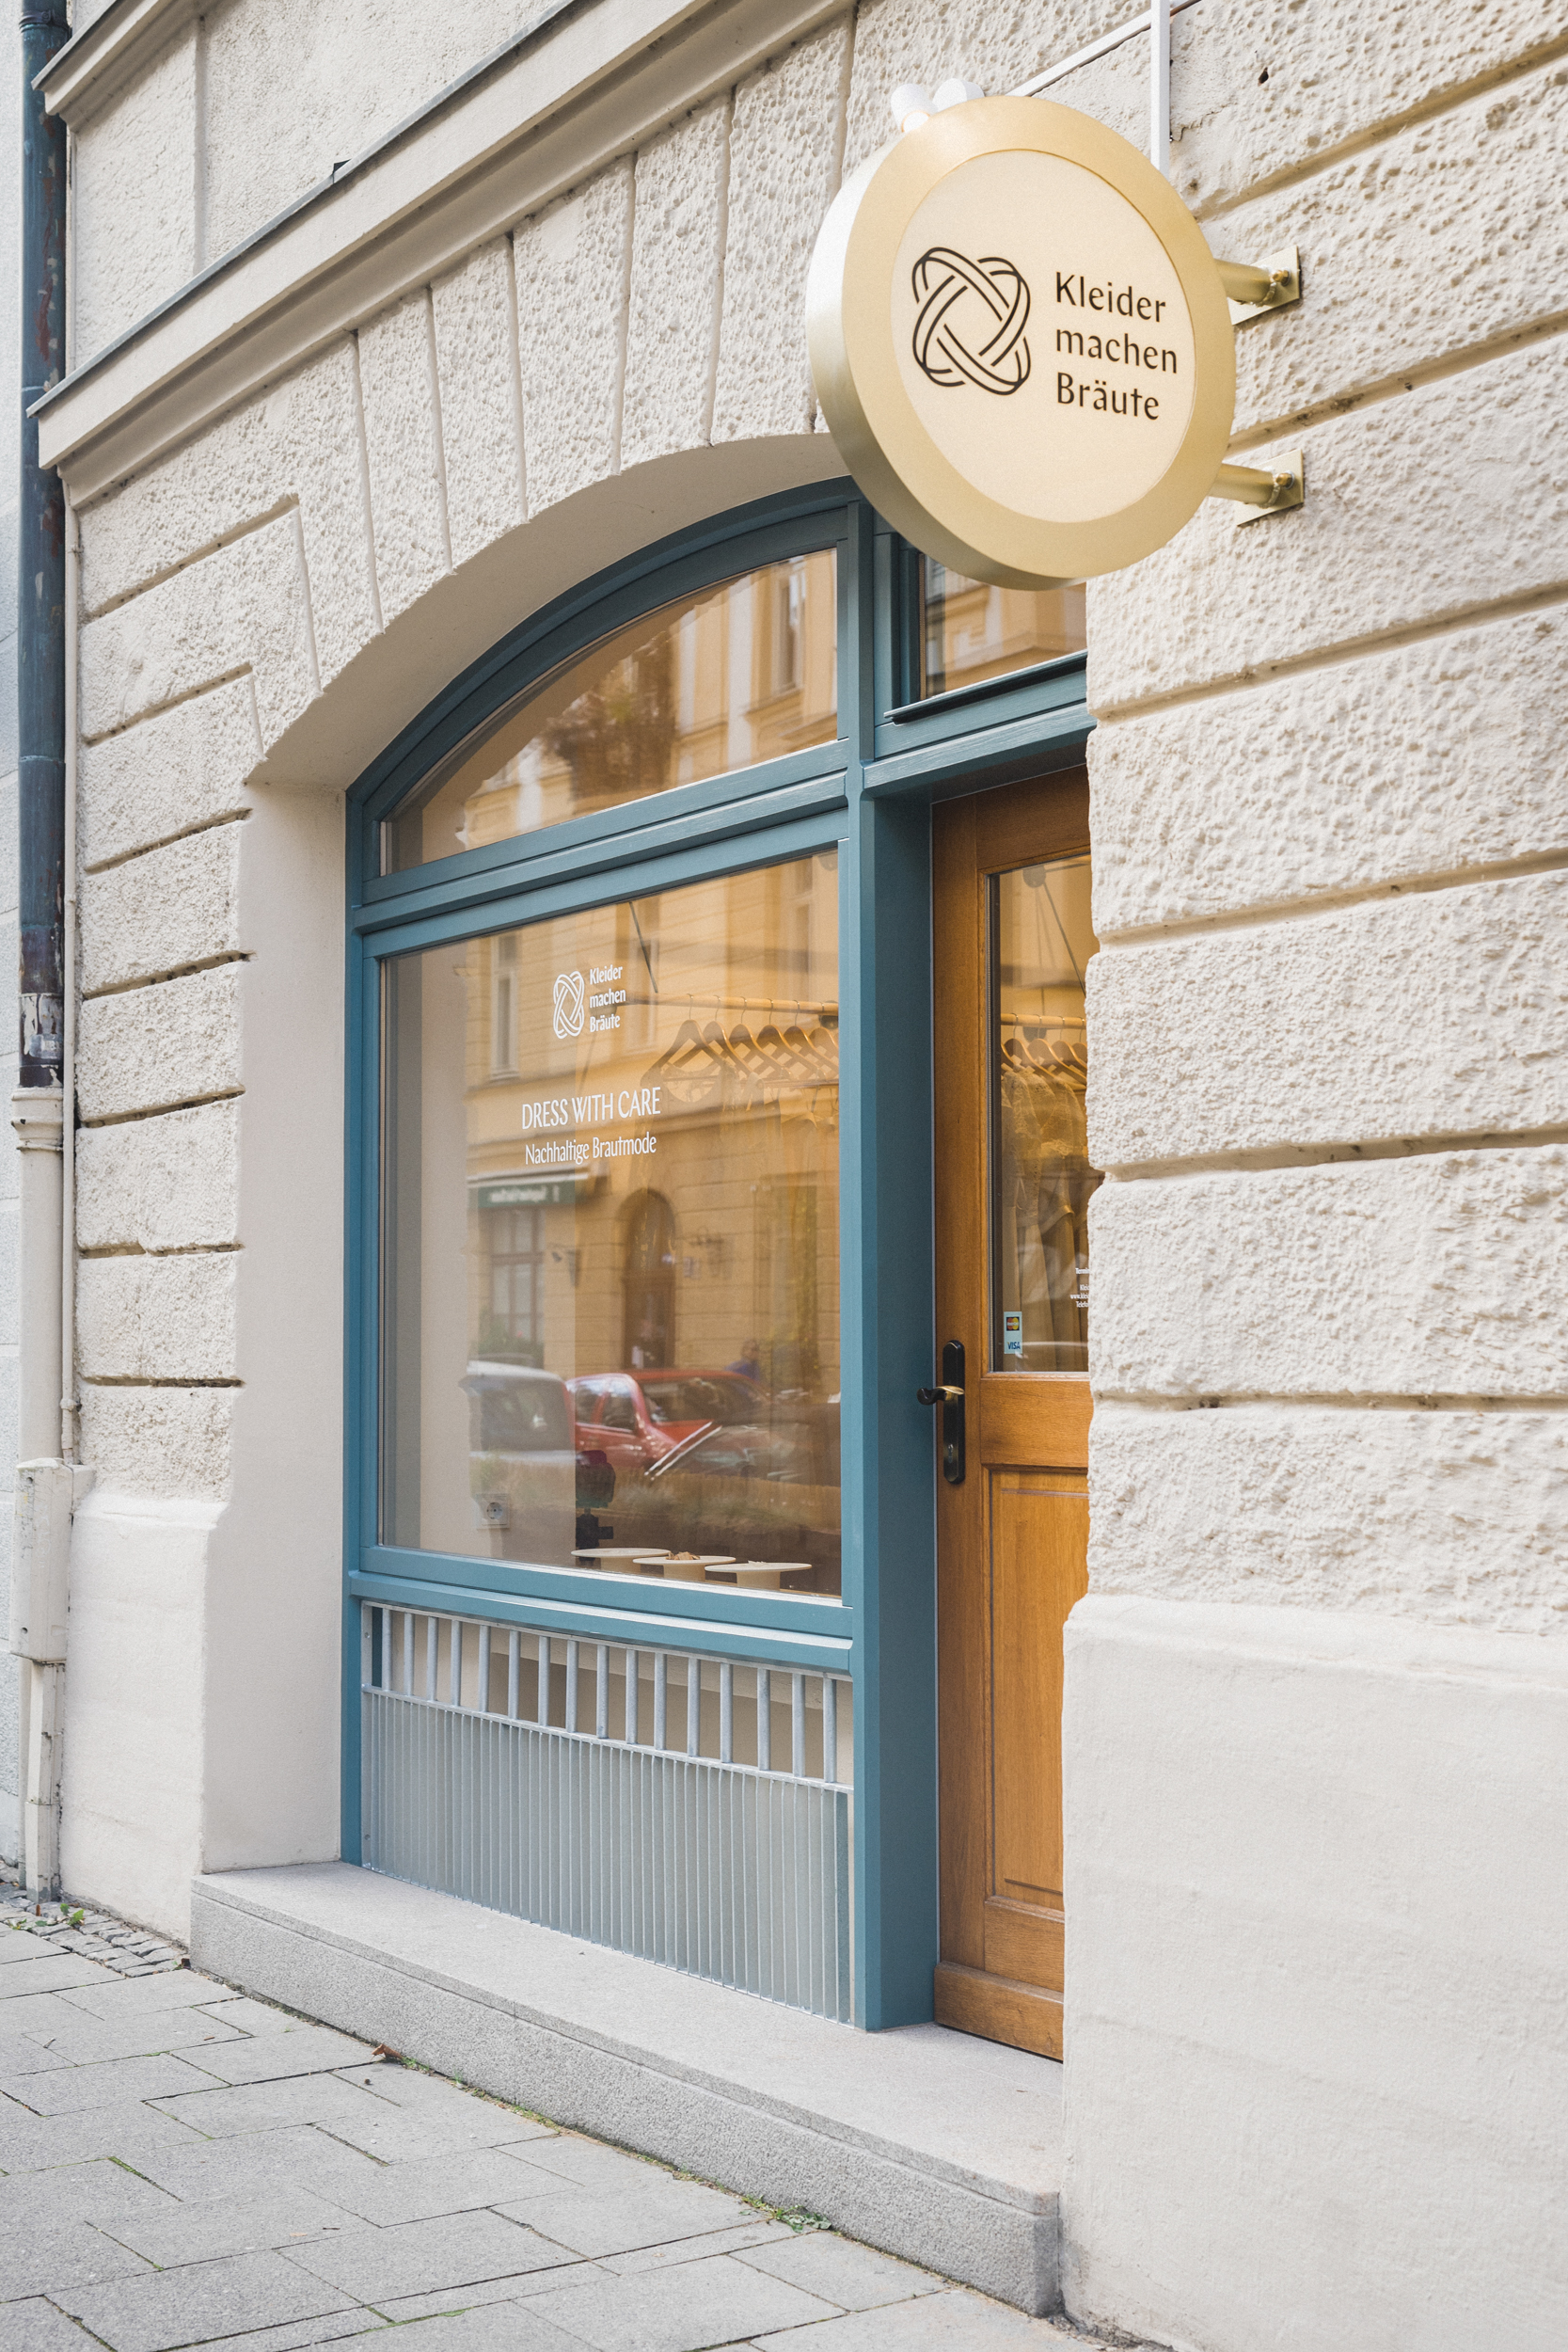 Fassade eines Brautmodengeschäftes der Marke Kleider machen Bräute mit Schaufenster und Schild mit ihrem Corporate Design in München.